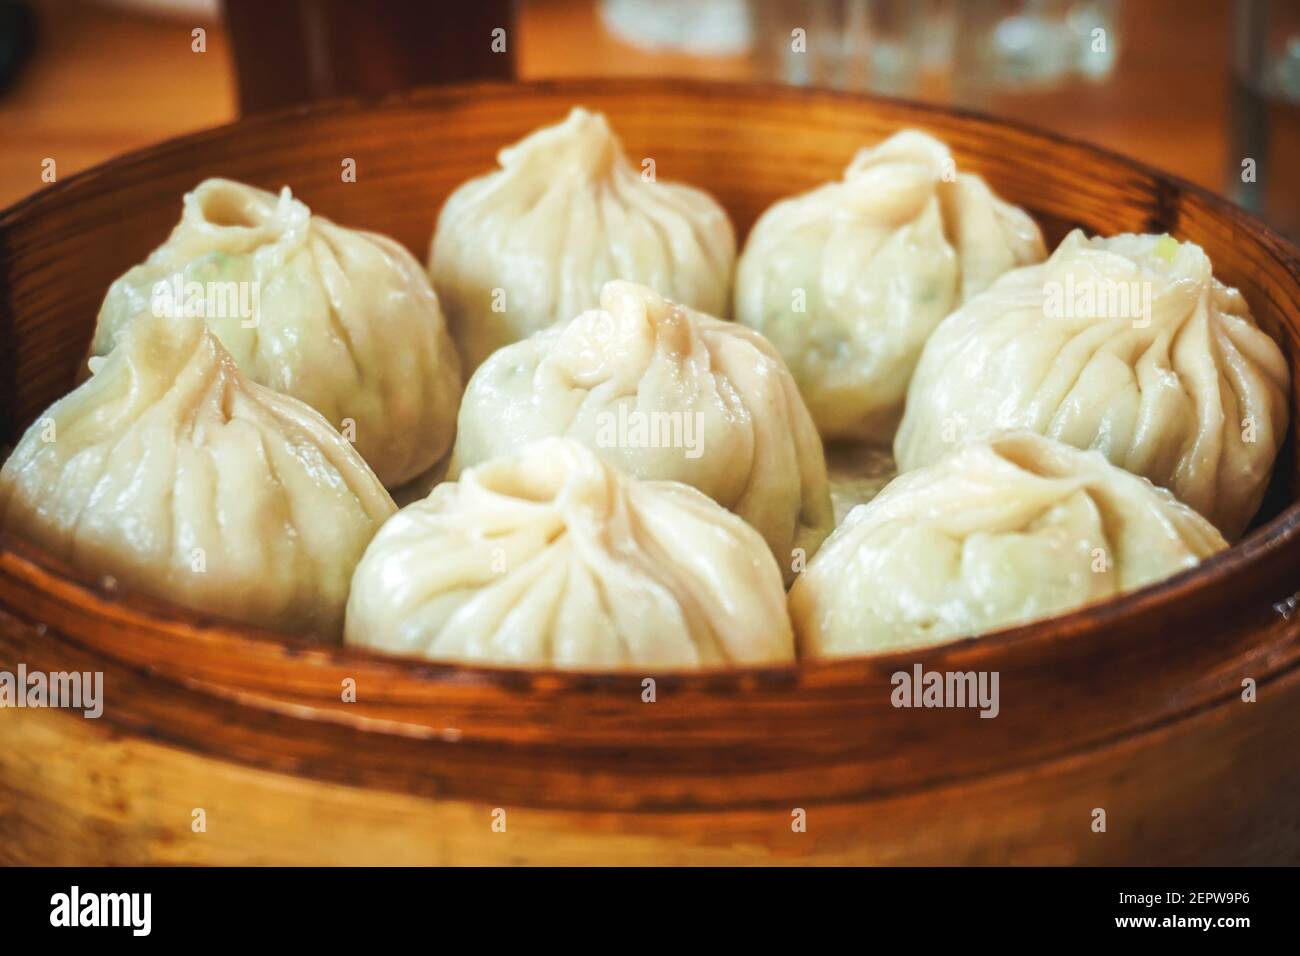 steamed dumplings in wooden basket Stock Photo